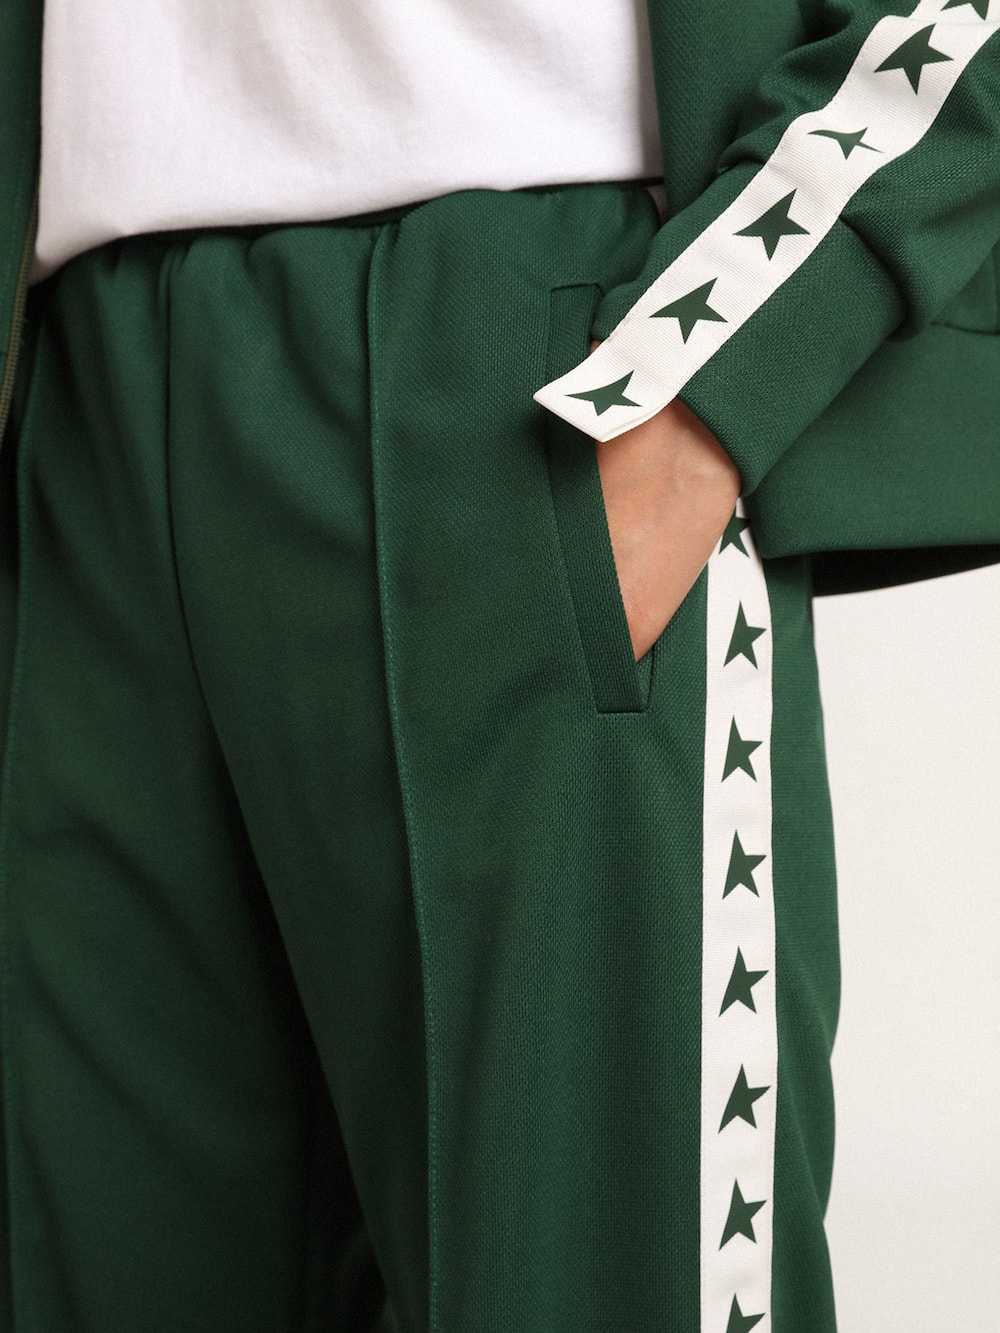 Golden Goose - Pantalone jogging da donna di colore verde brillante con fascia e stelle in 